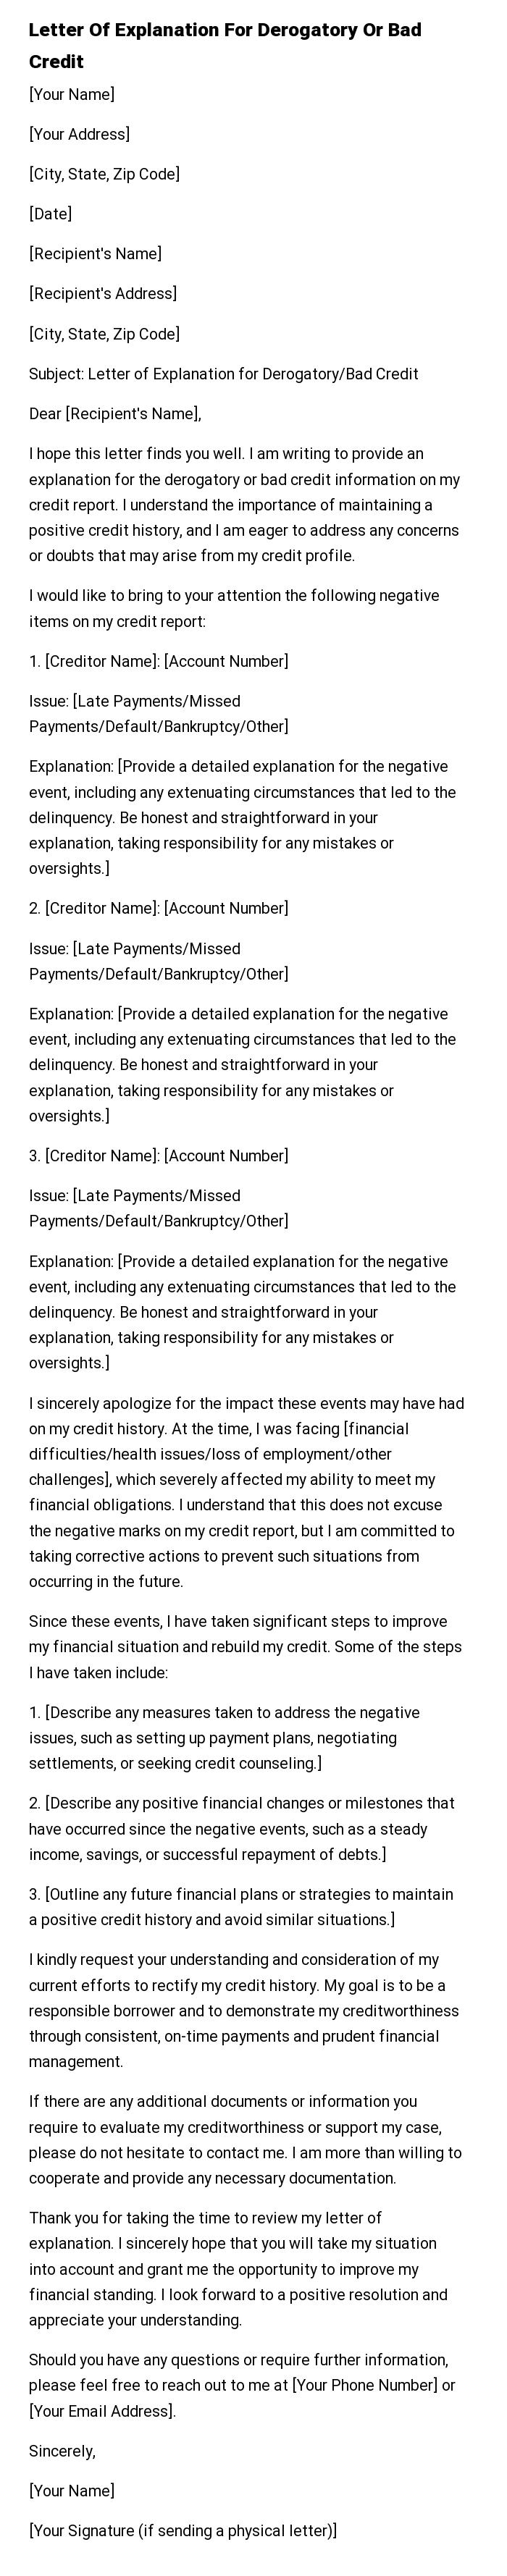 Letter Of Explanation For Derogatory Or Bad Credit